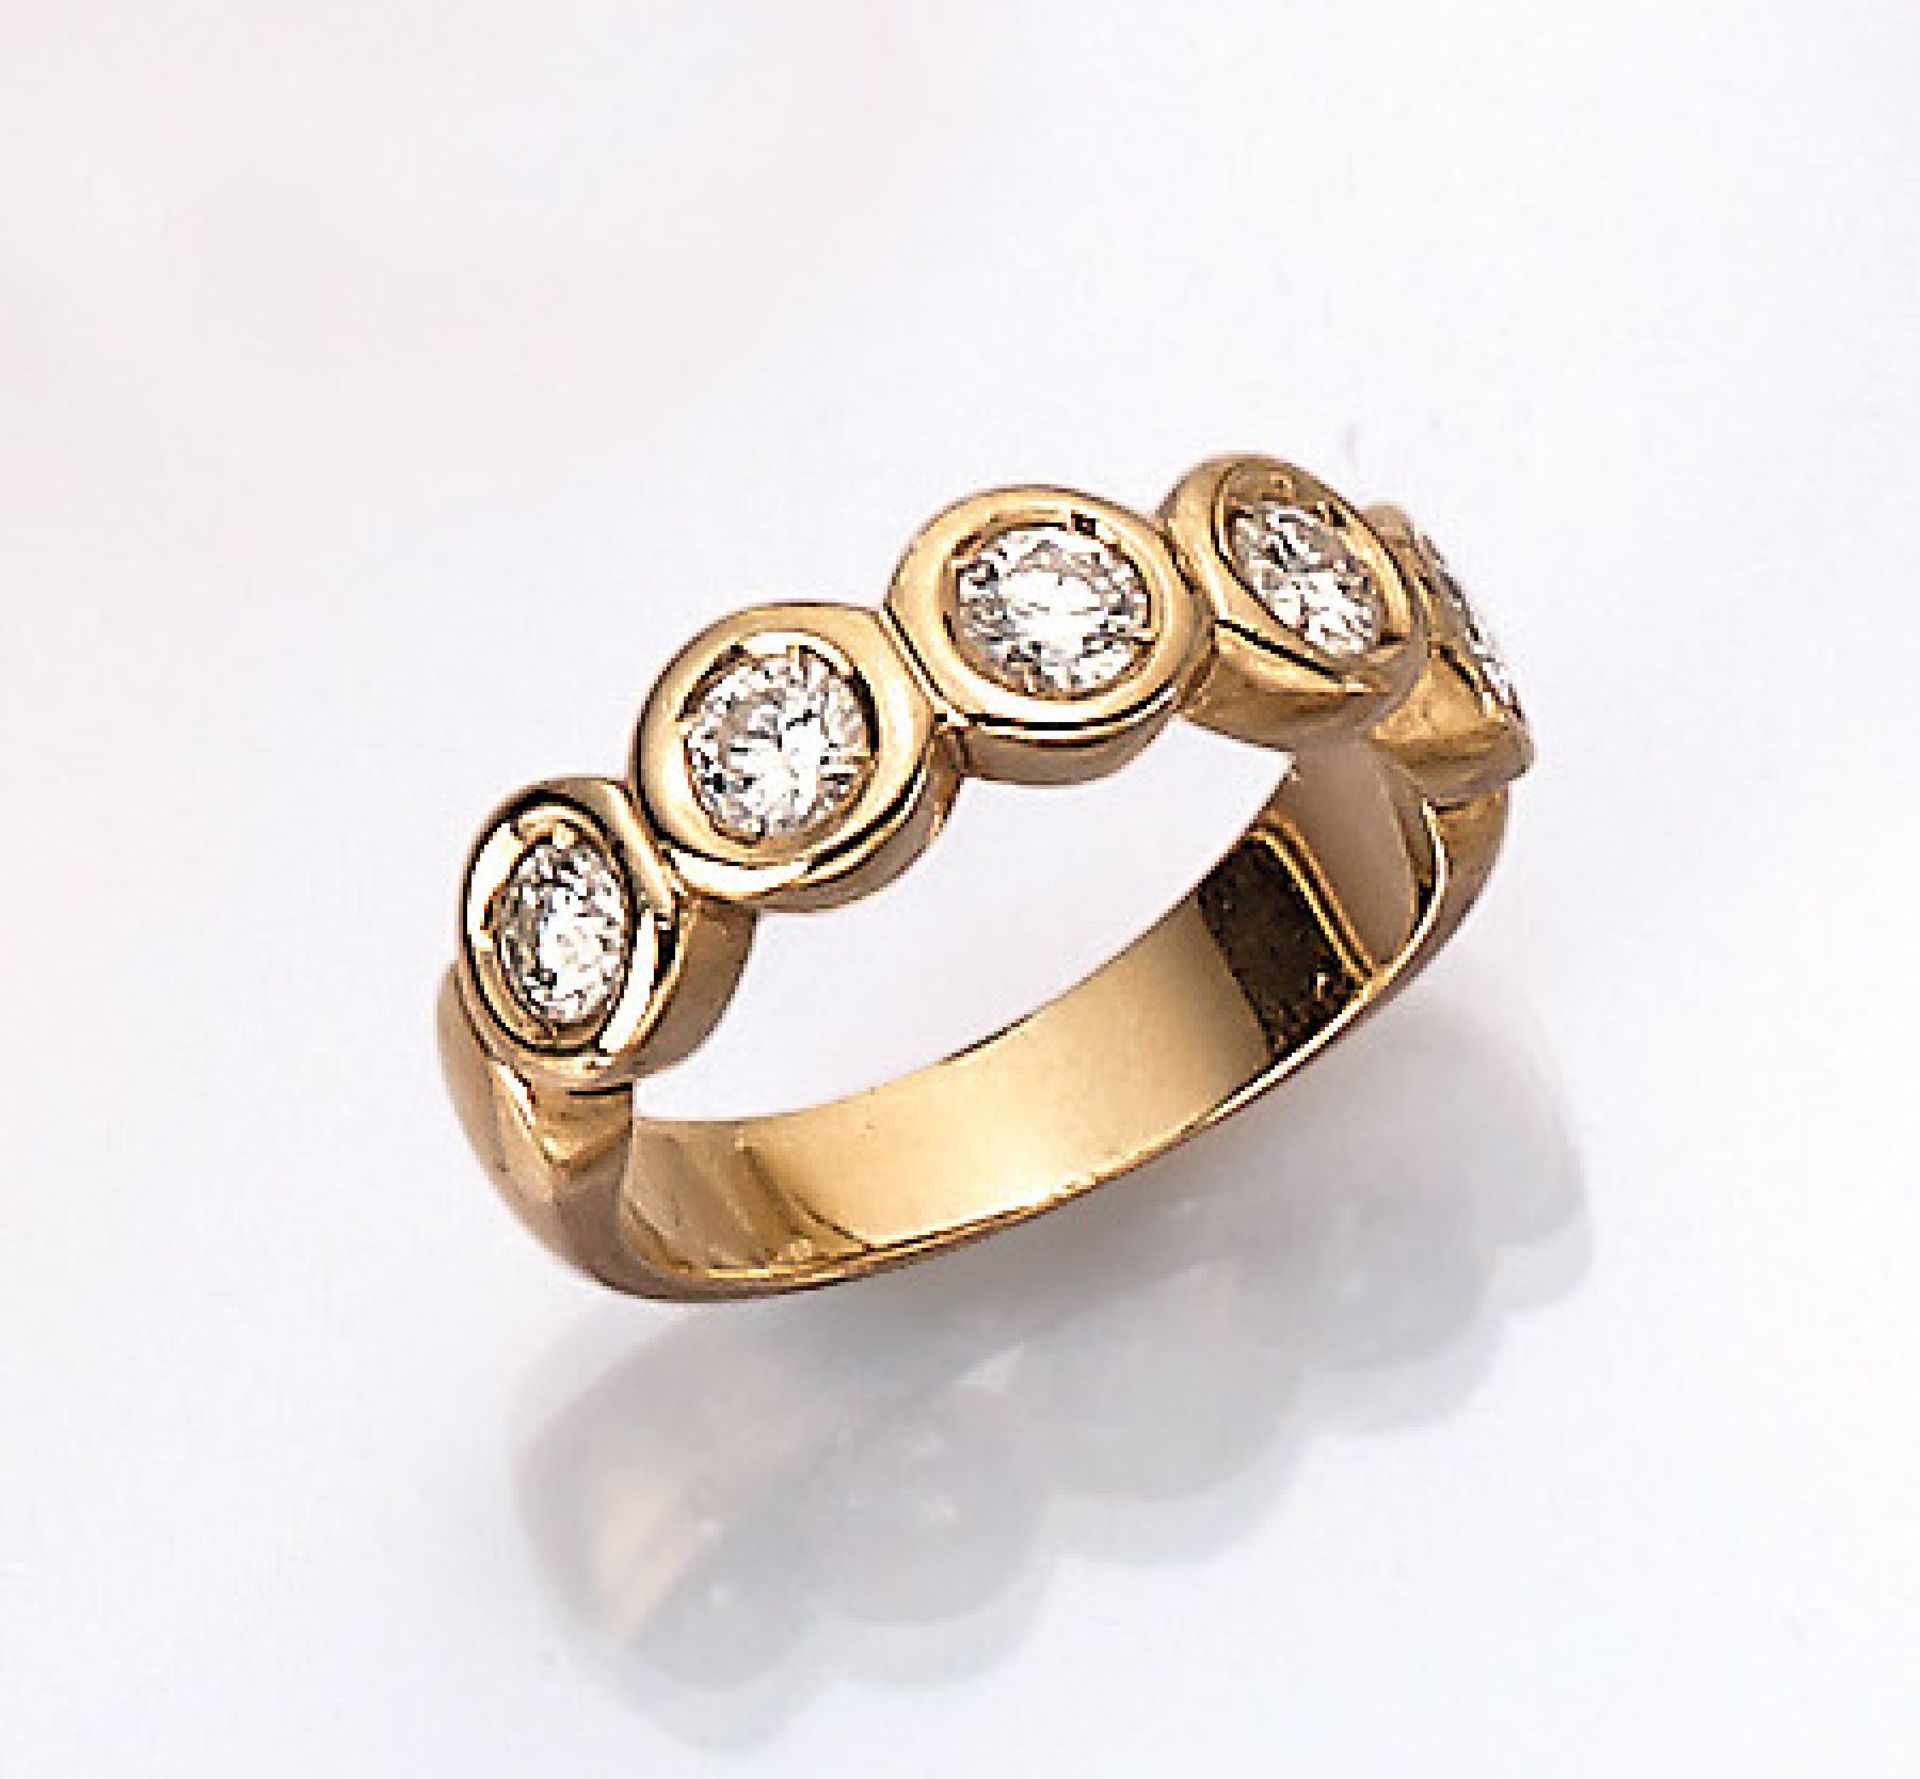 14 kt Gold Ring mit Brillanten, GG 585/000,5 Brillanten zus. ca. 1.20 ct feines Weiß- Weiß/si-p1, RW